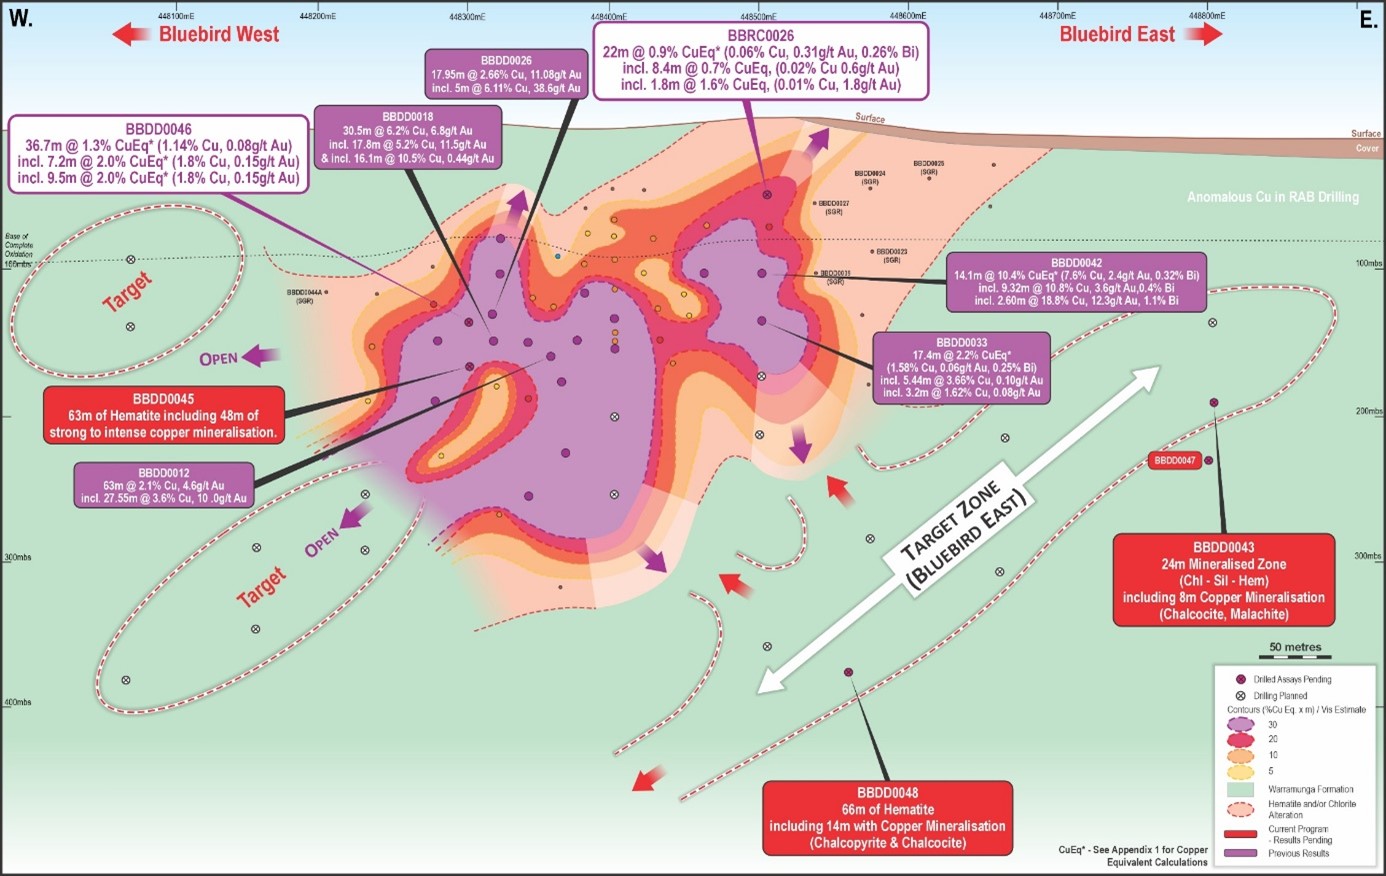 Geologische Karte von "Bluebird" mit Kupfer- und Goldabschnitten, bohrfertigen Zielen und hematitreichen Zonen, farbcodiert nach Mineralisierungsstärke und geplanten Bohrungen.